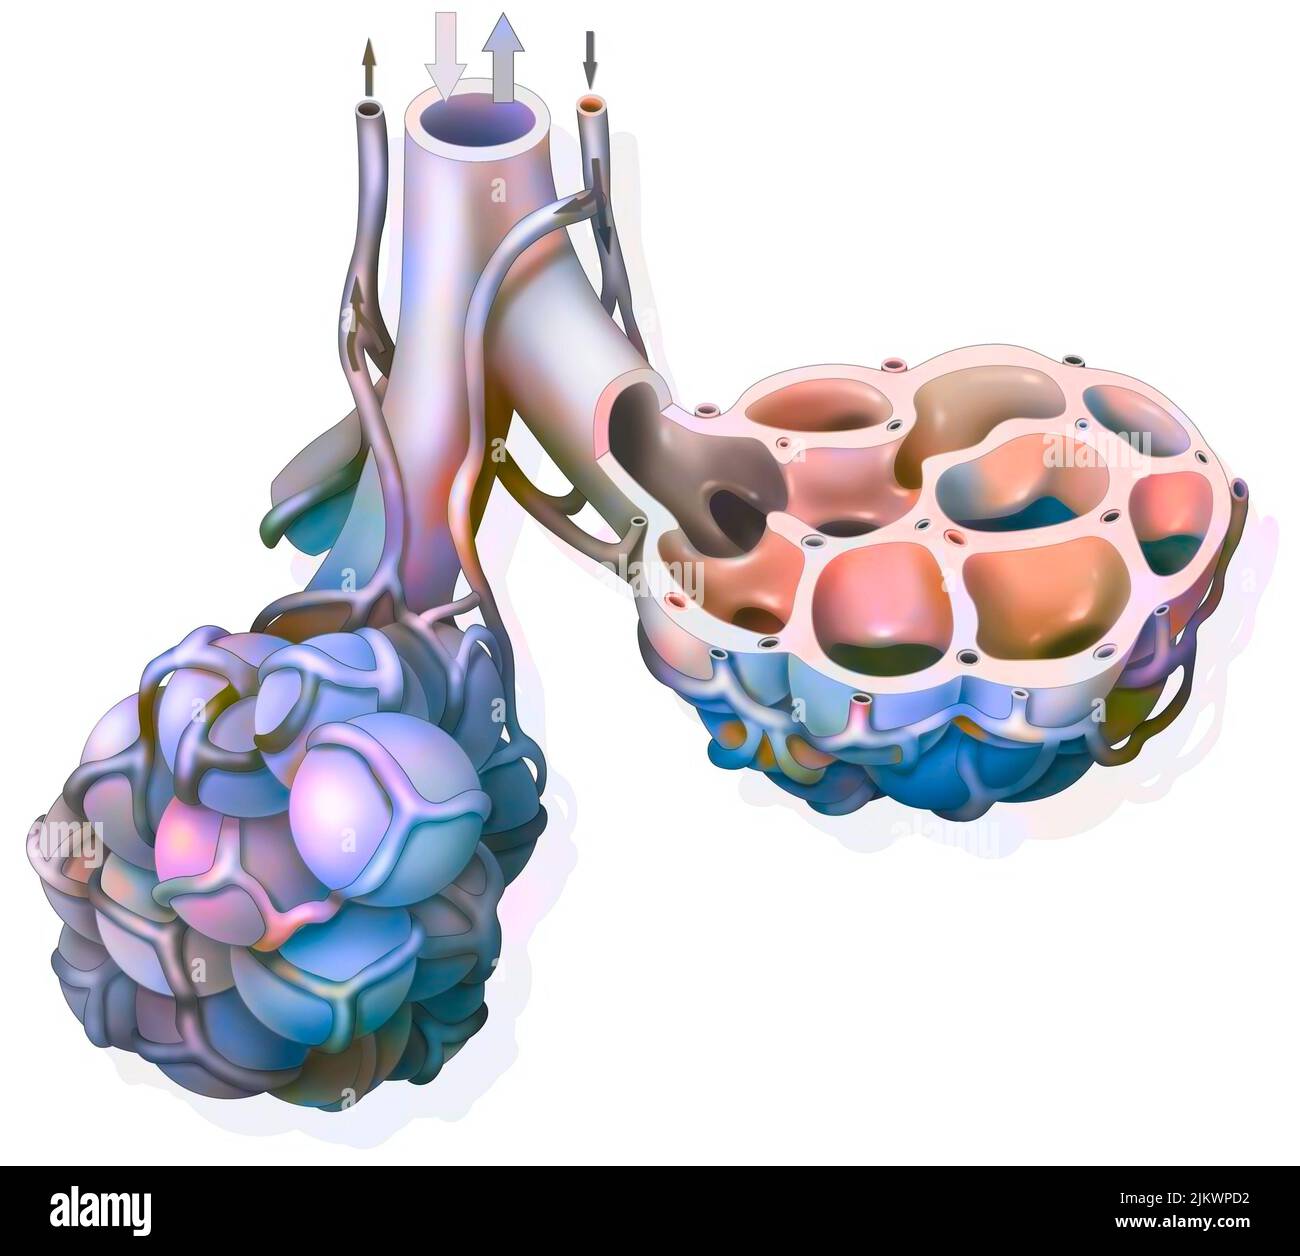 Polmone: Alveolo polmonare con la sua rete capillare che permette lo scambio di gas. Foto Stock